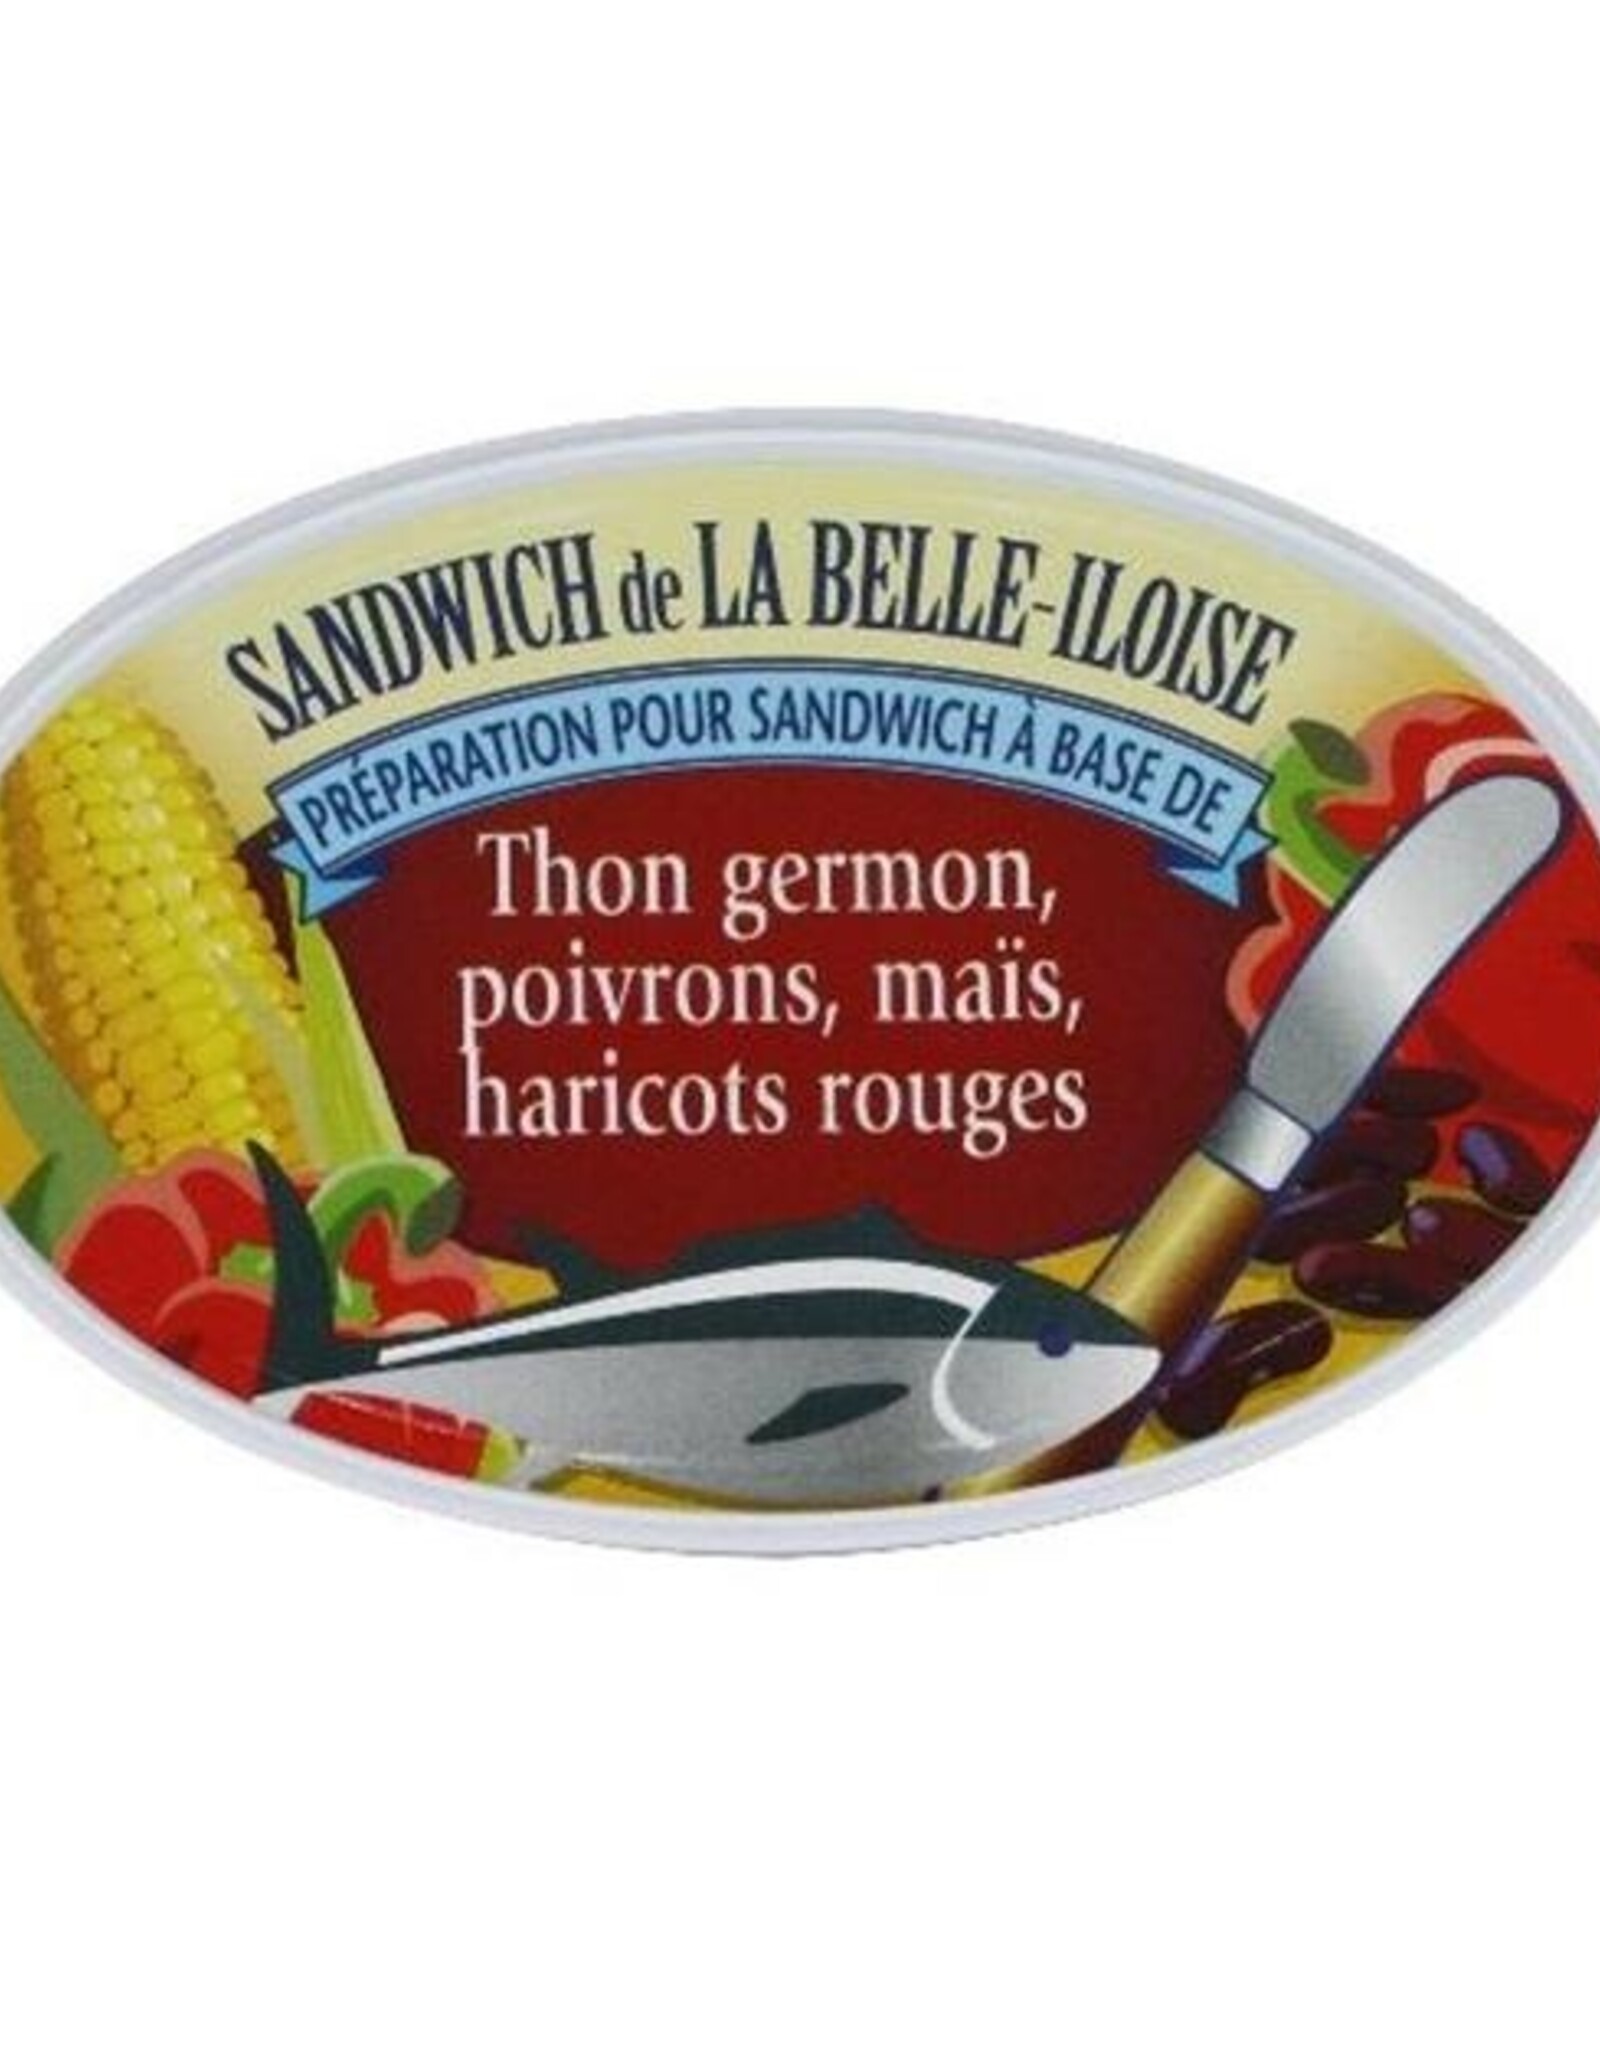 La Belle Iloise preparation pour Sandwich Thon Poivron mais - Sandwich Filling Tun, Red Pepper & Corn